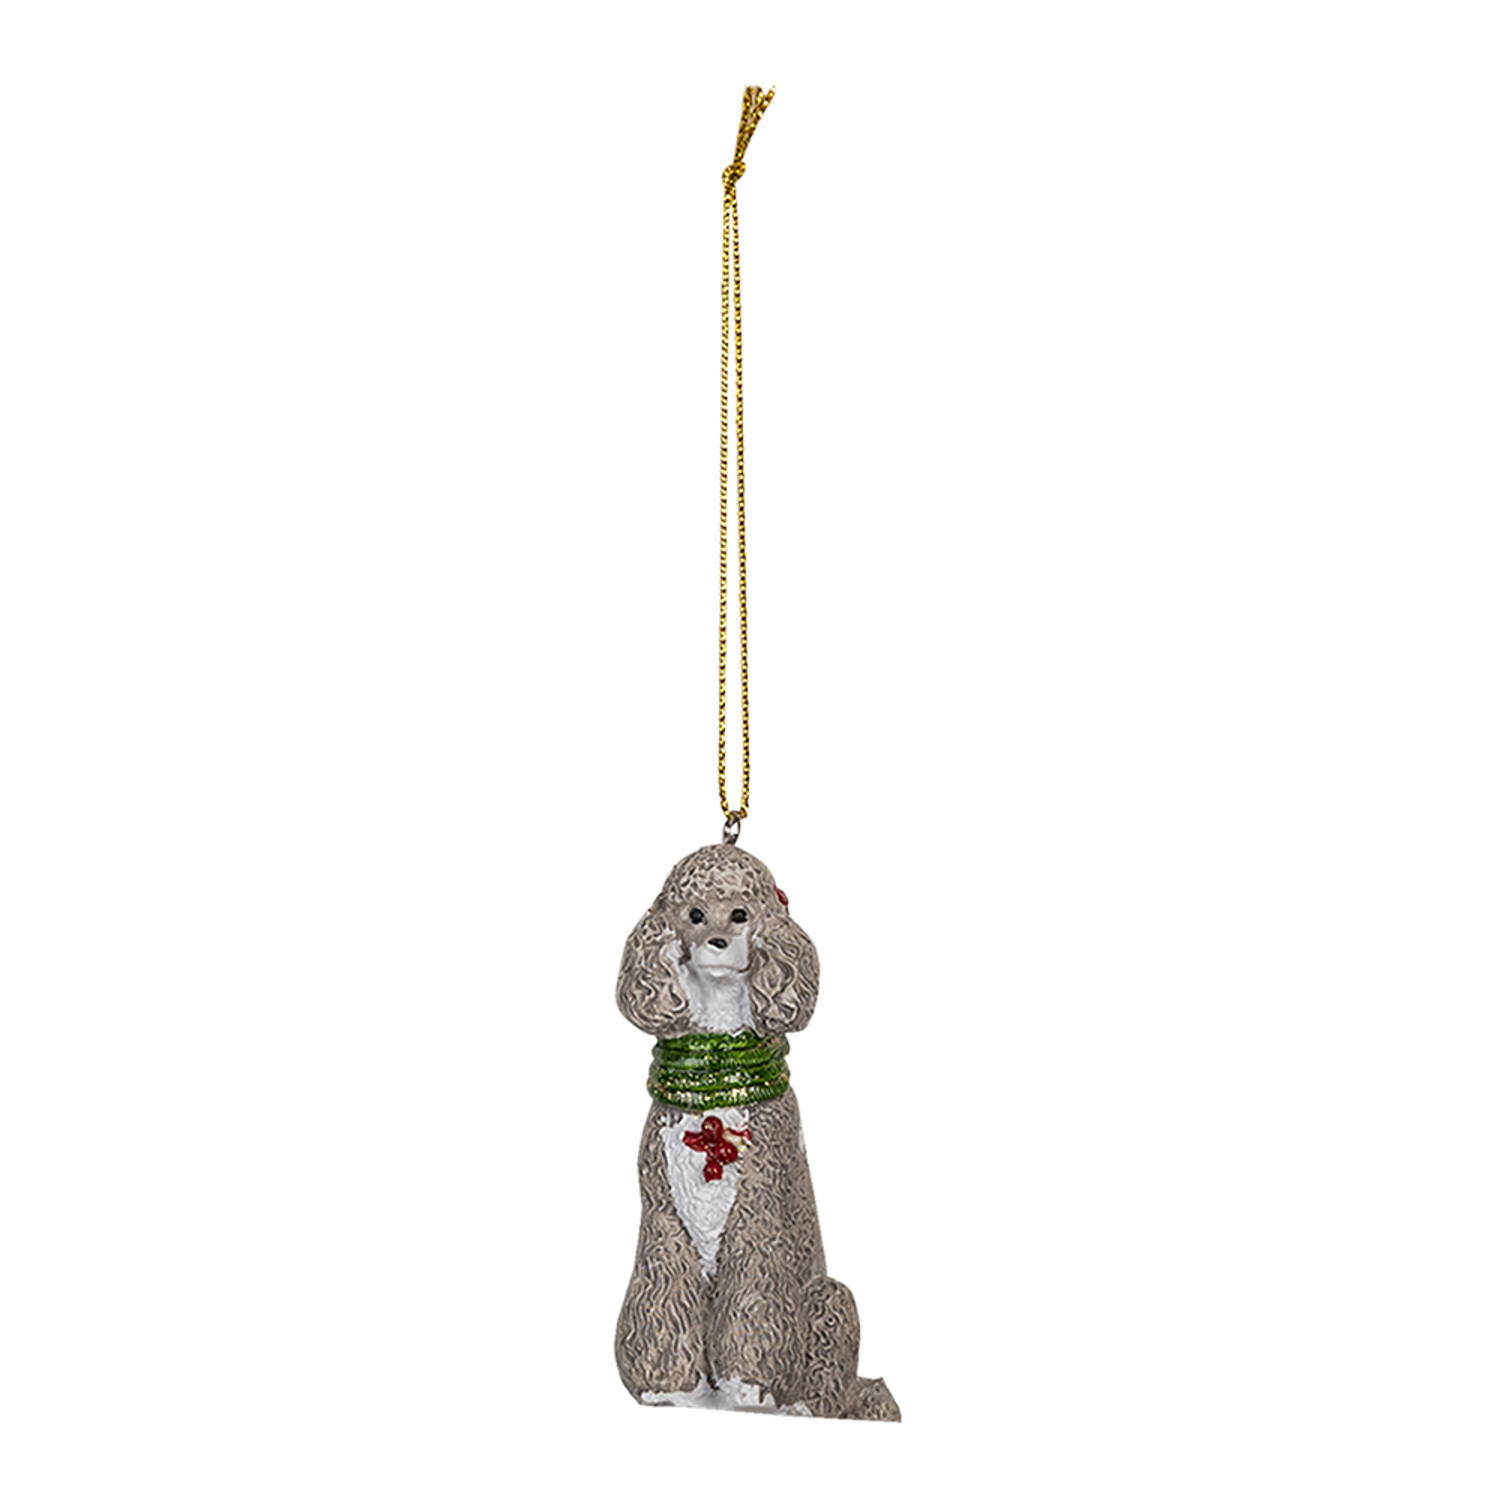 HAES DECO - Kersthanger Hond - Formaat 5x3x8 cm - Kleur Grijs - Materiaal Polyresin - Kerstversiering, Kerstdecoratie, Decoratie Hanger, Kerstboomversiering